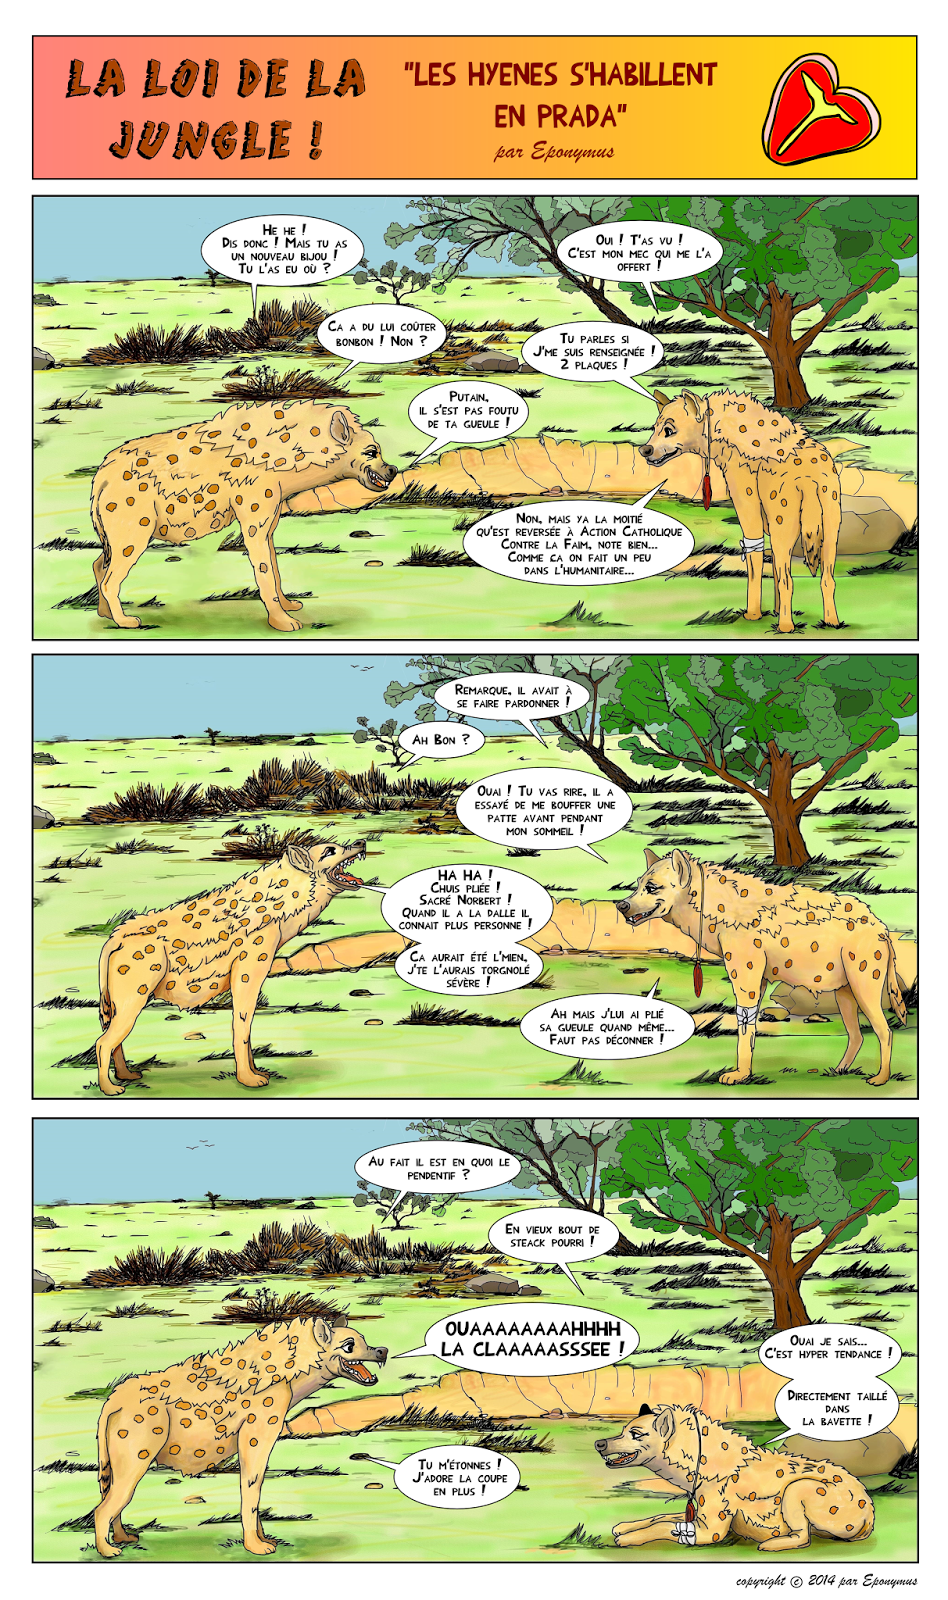 La loi de la jungle page 6